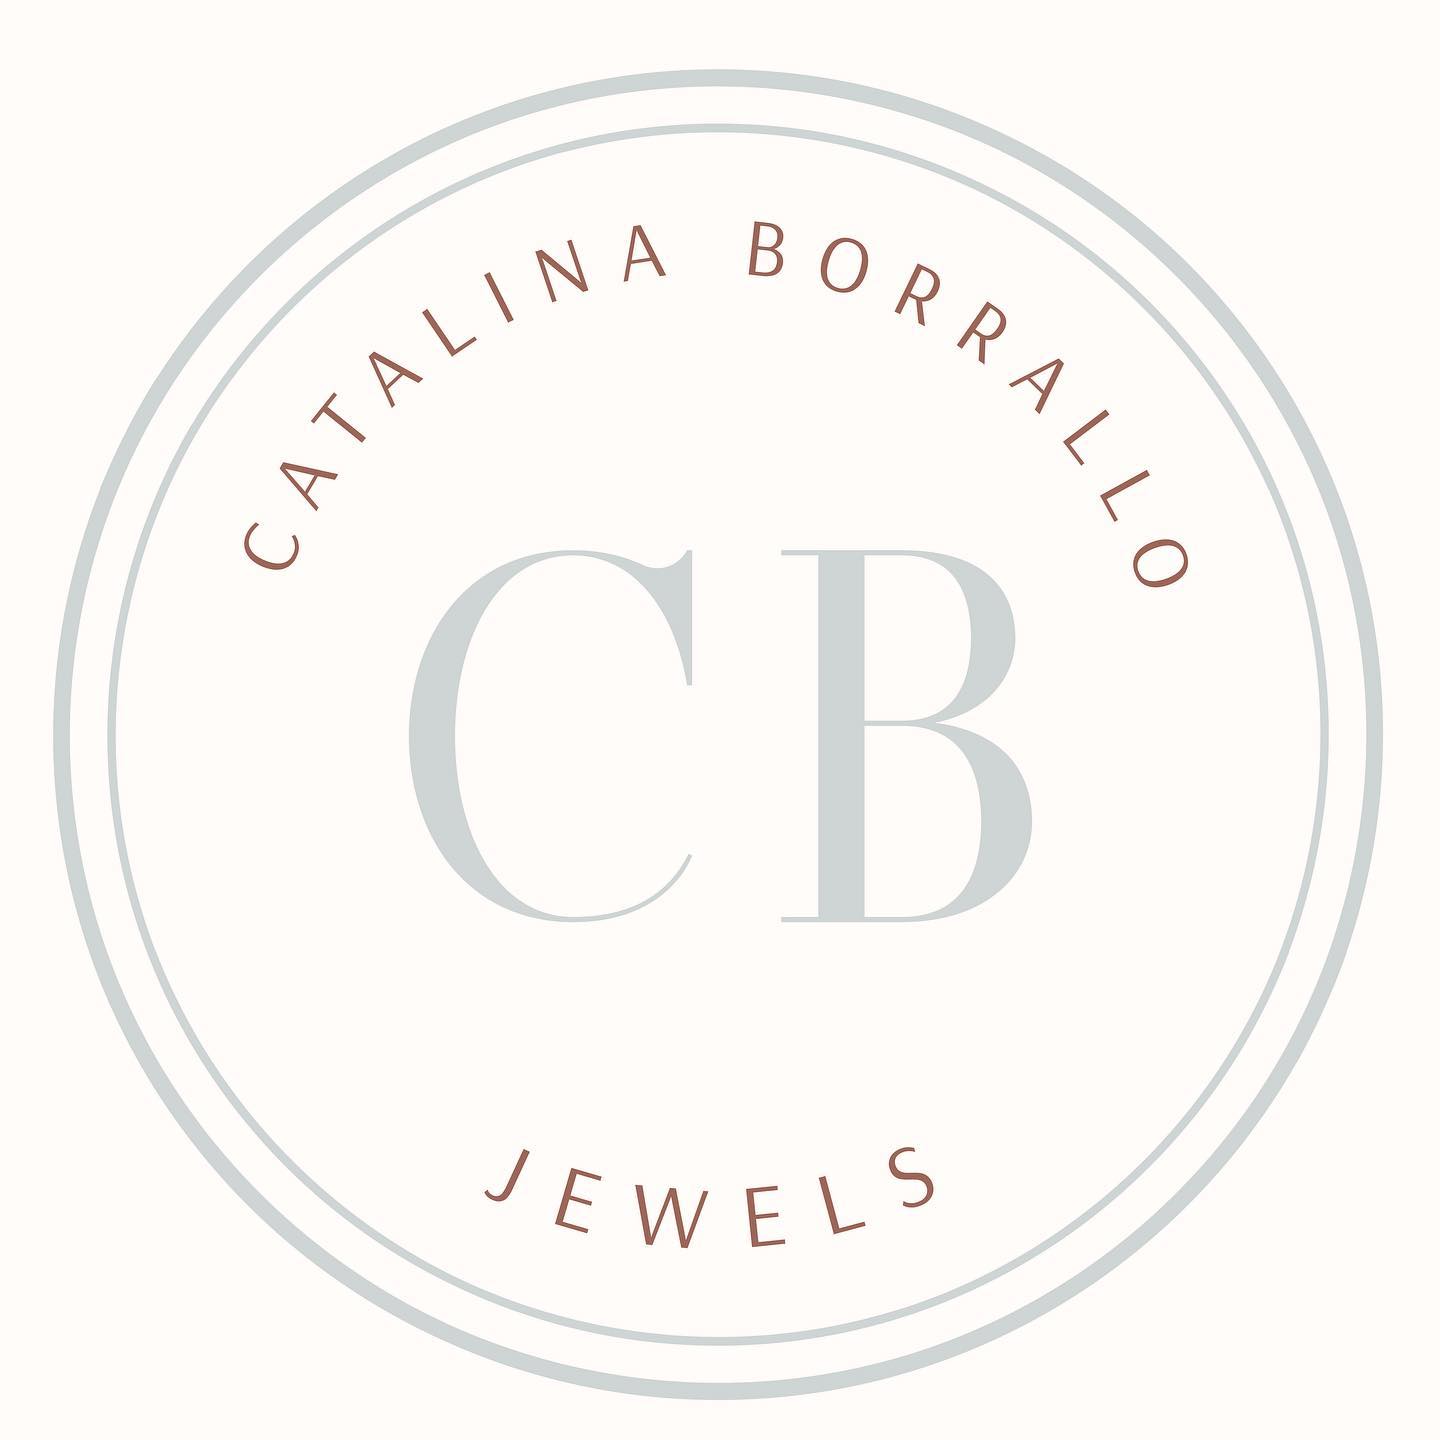 Catalina Borrallo CB